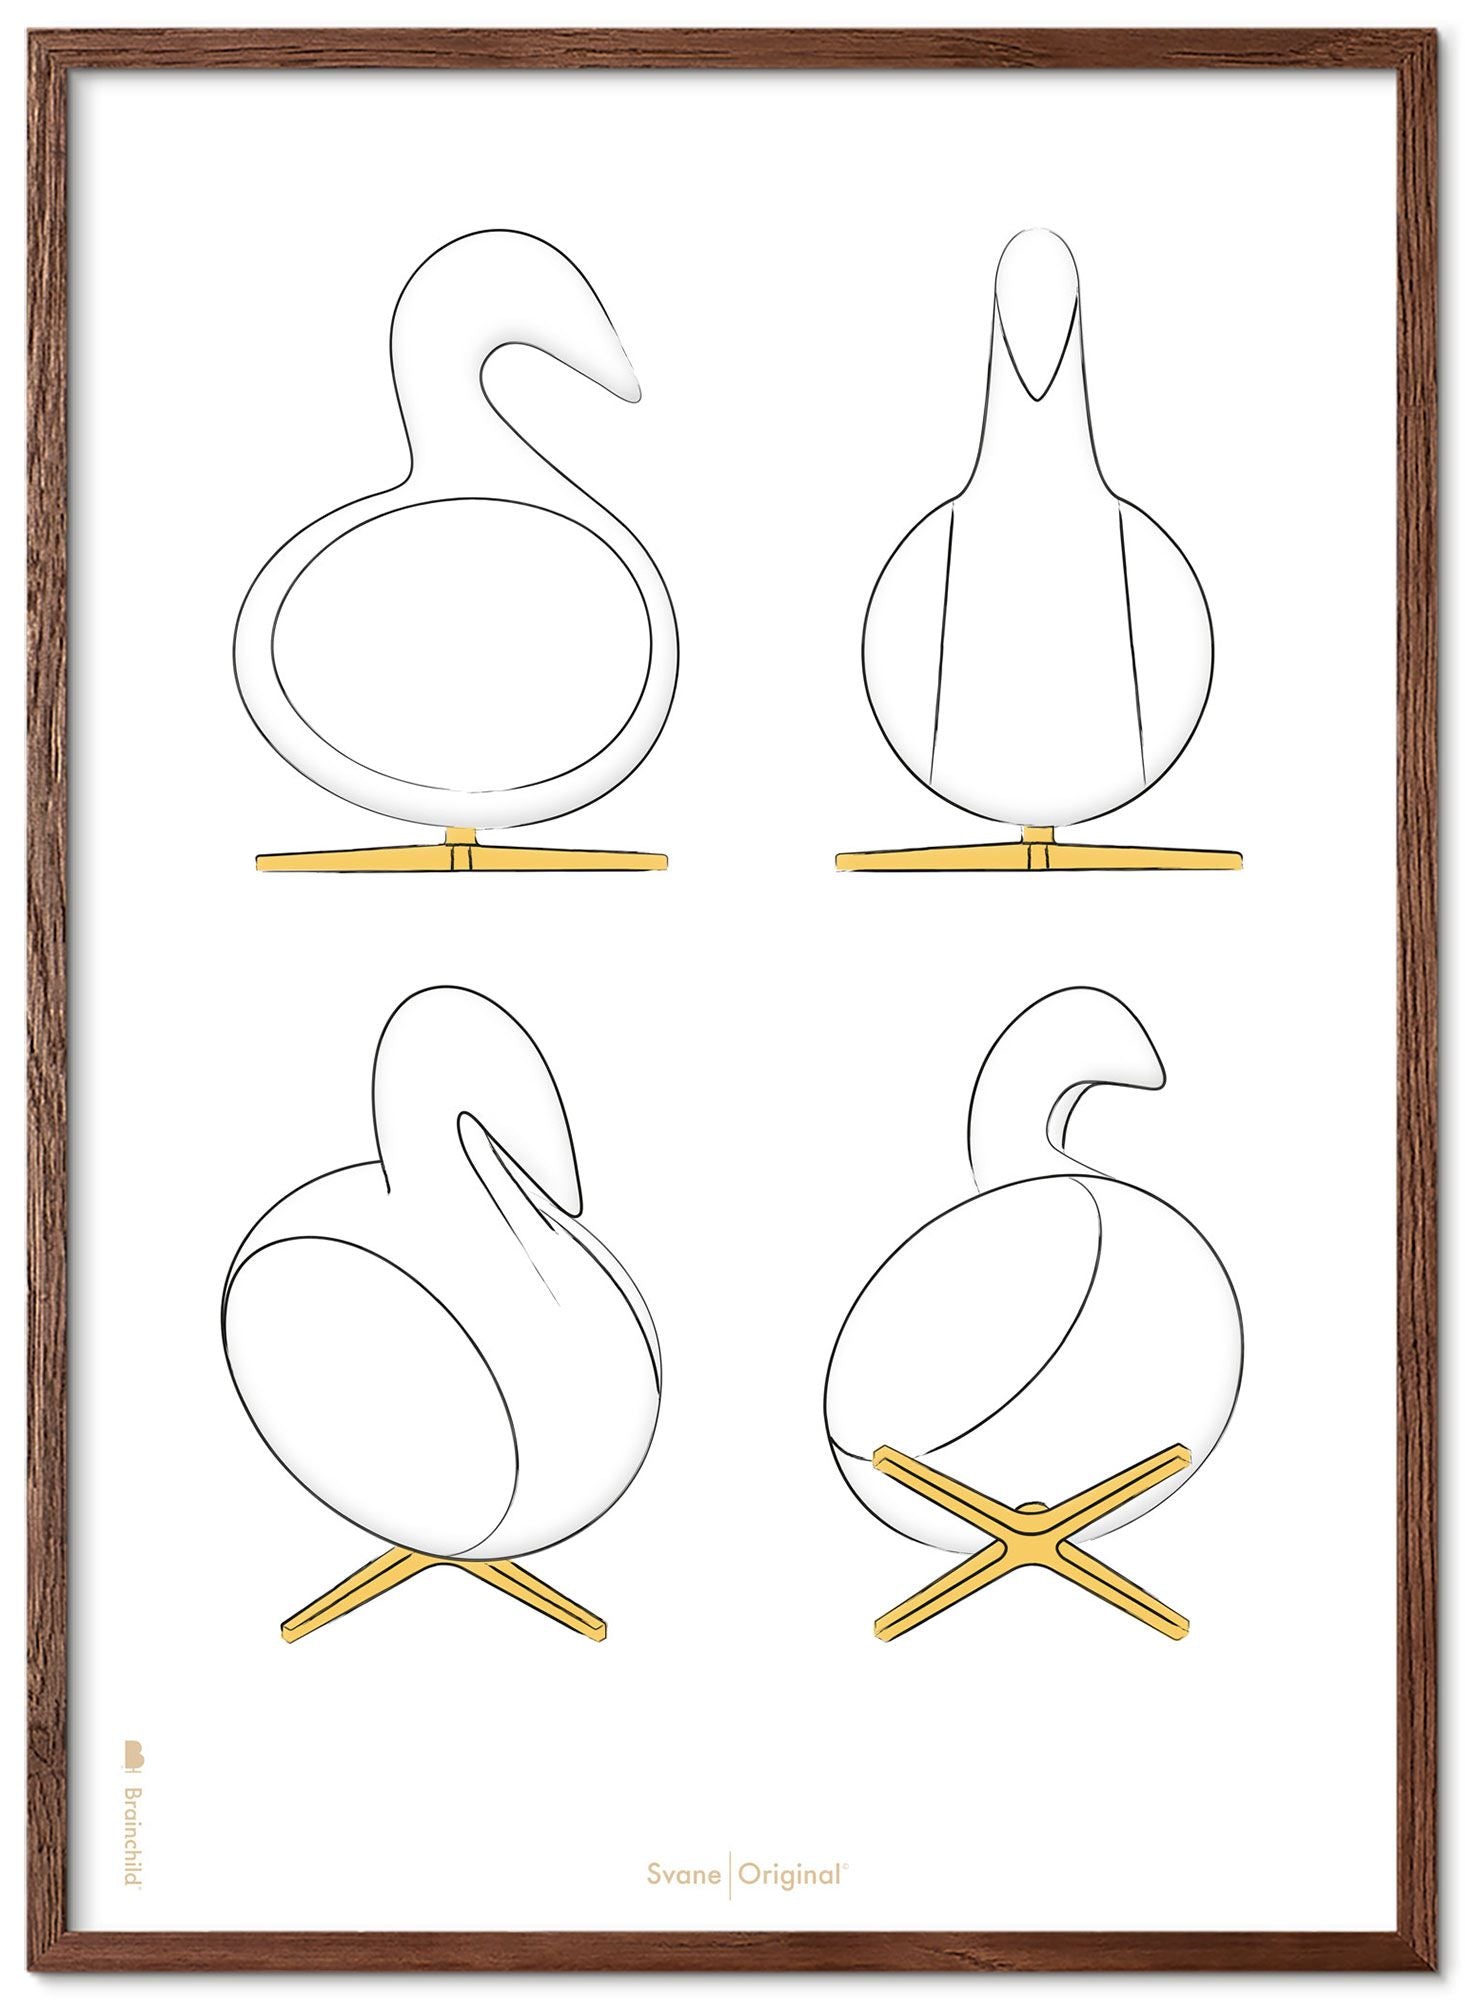 Brainchild Swan Design Sketches Poster Frame Made Of Dark Wood 30x40 Cm, White Background